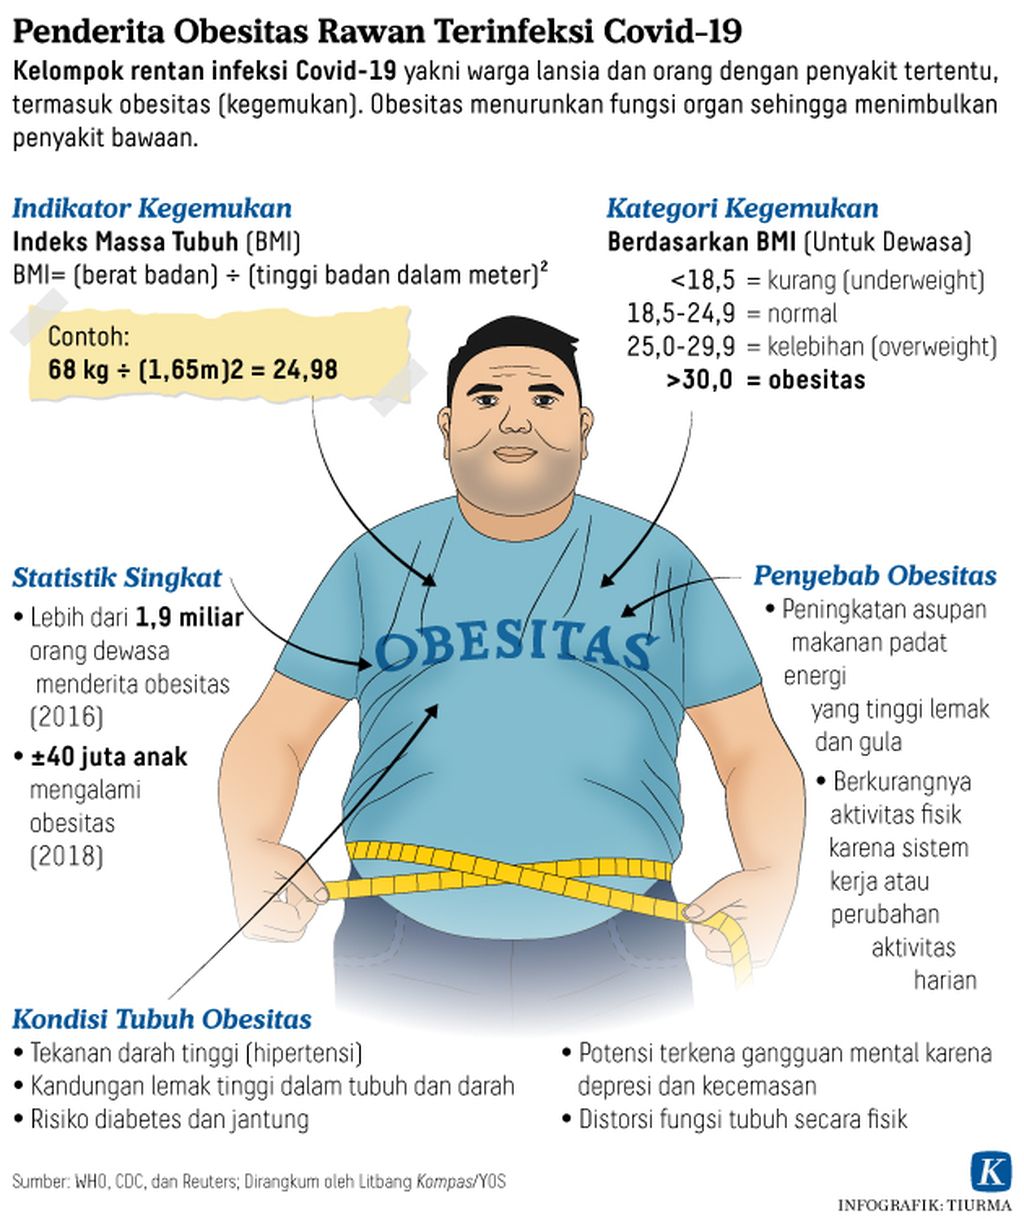 Penderita Obesitas Rawan Terinfeksi Covid-19 